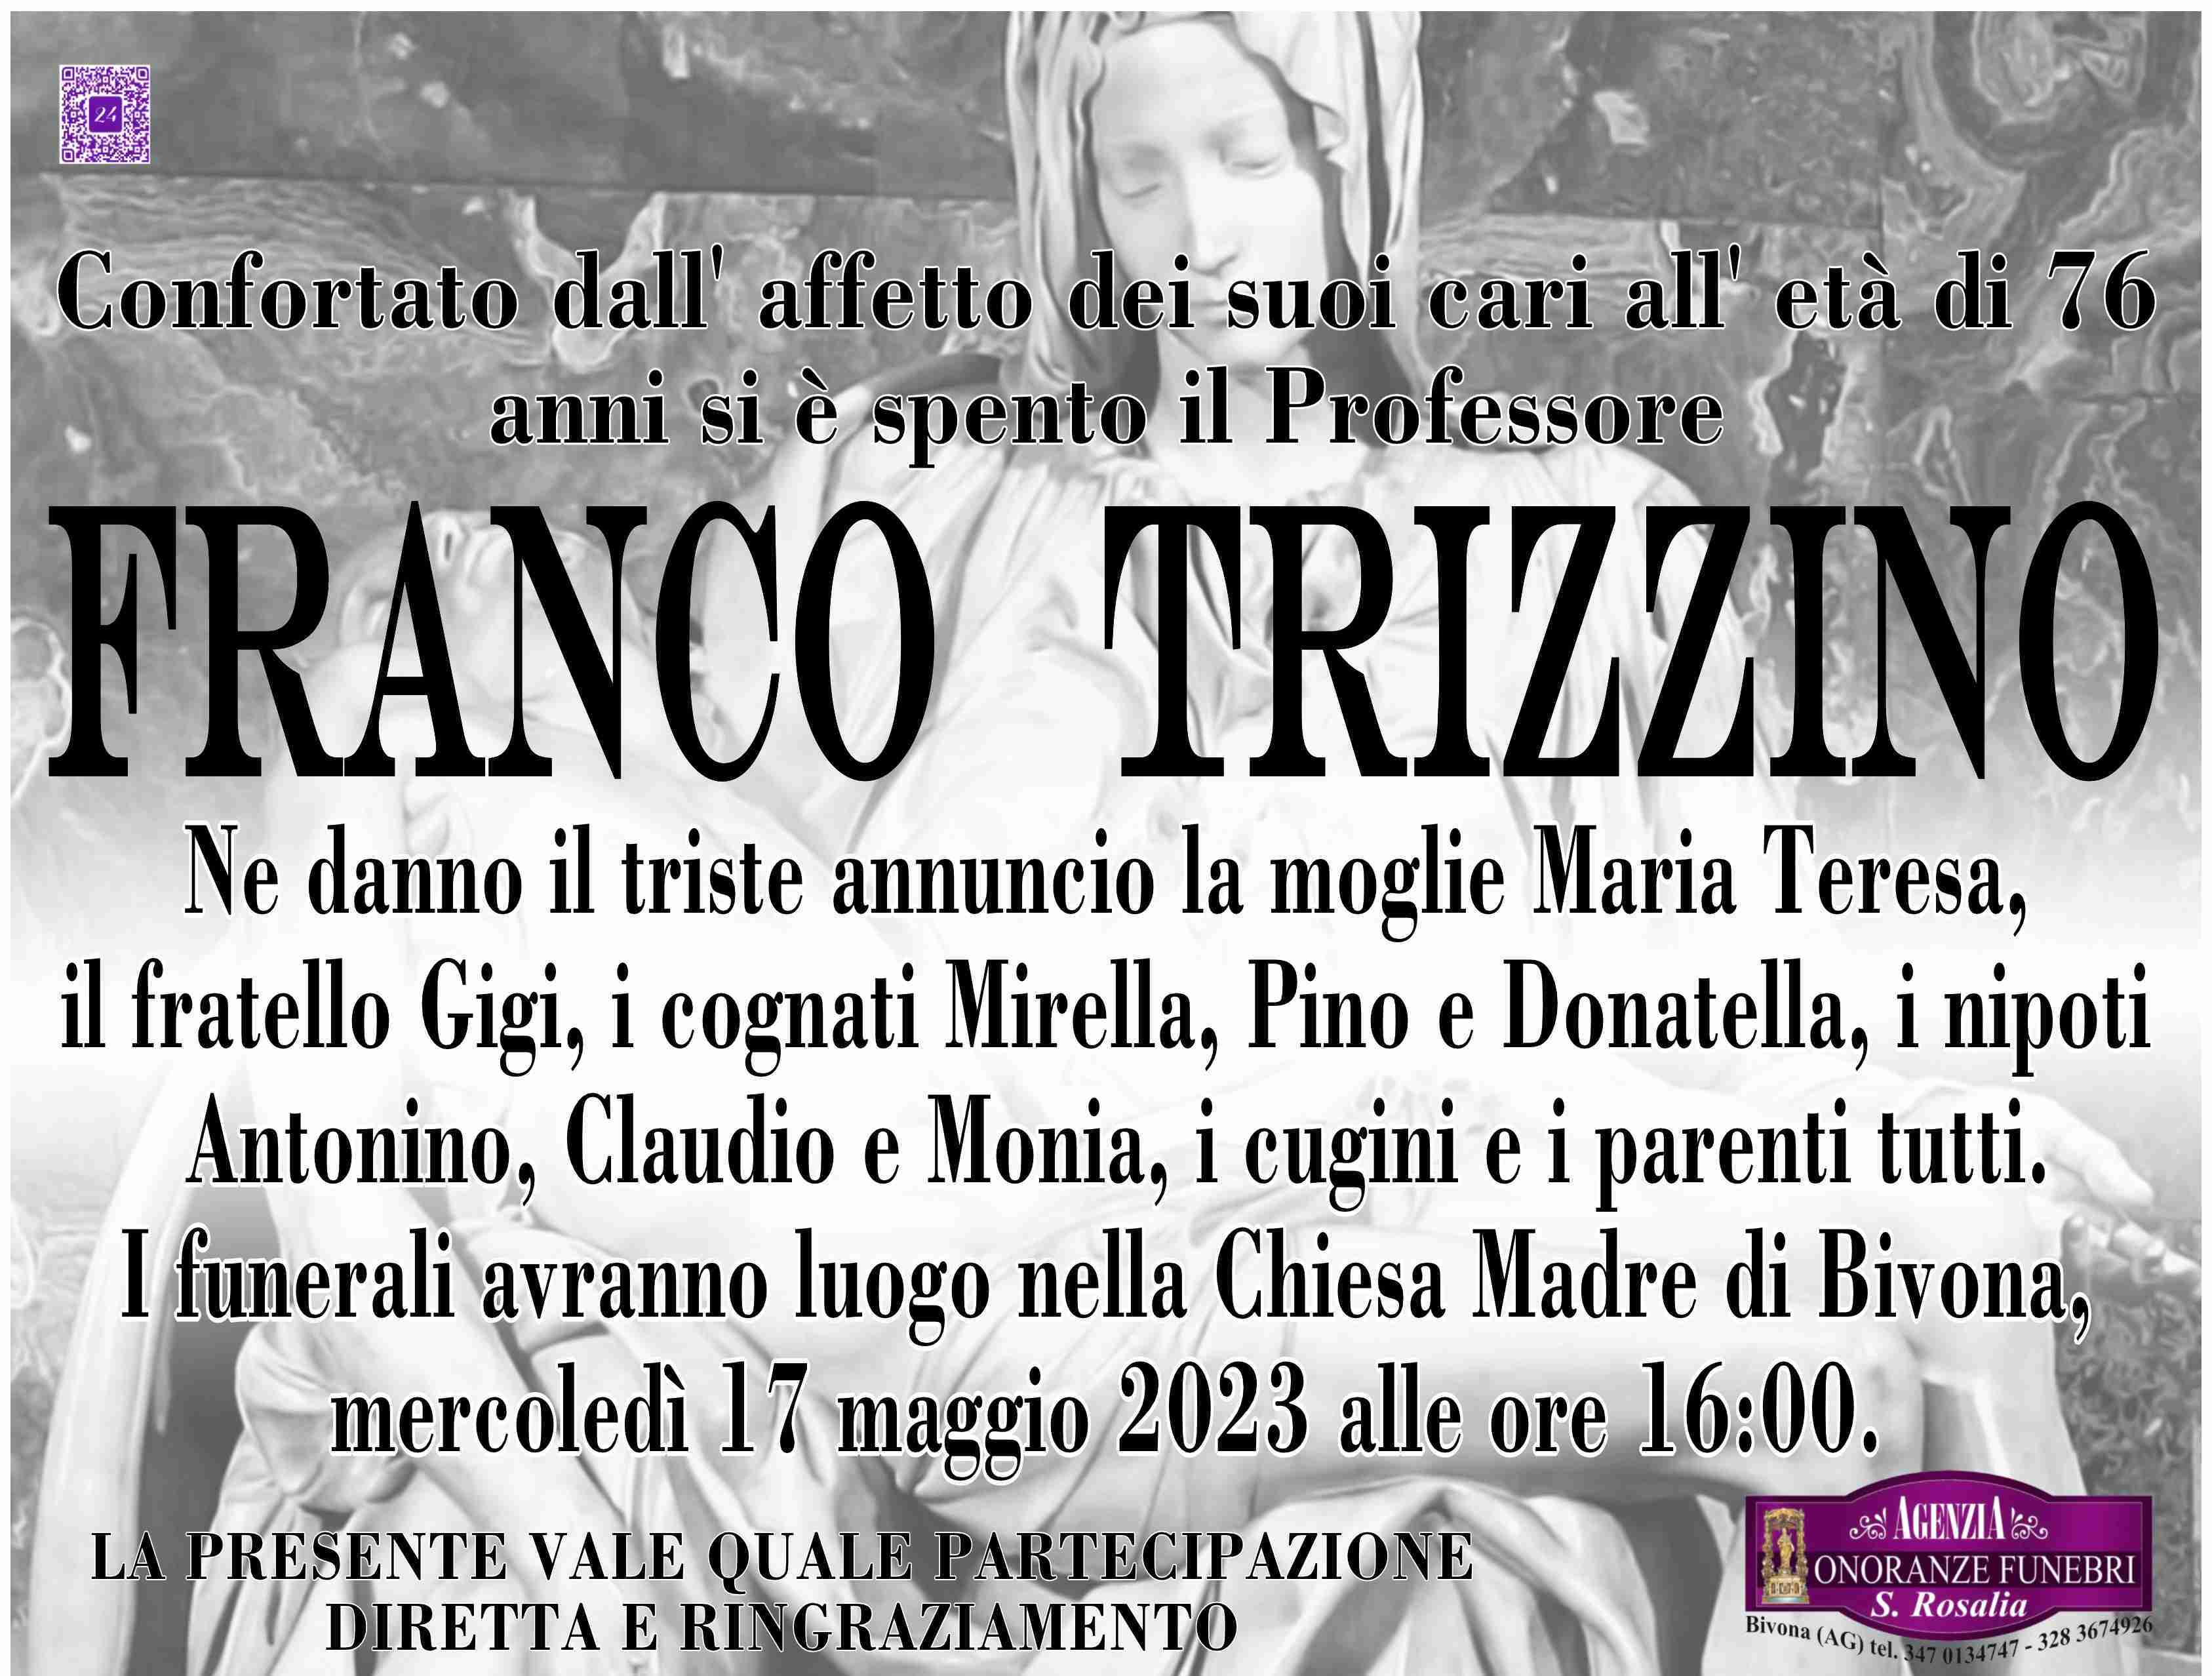 Franco Trizzino